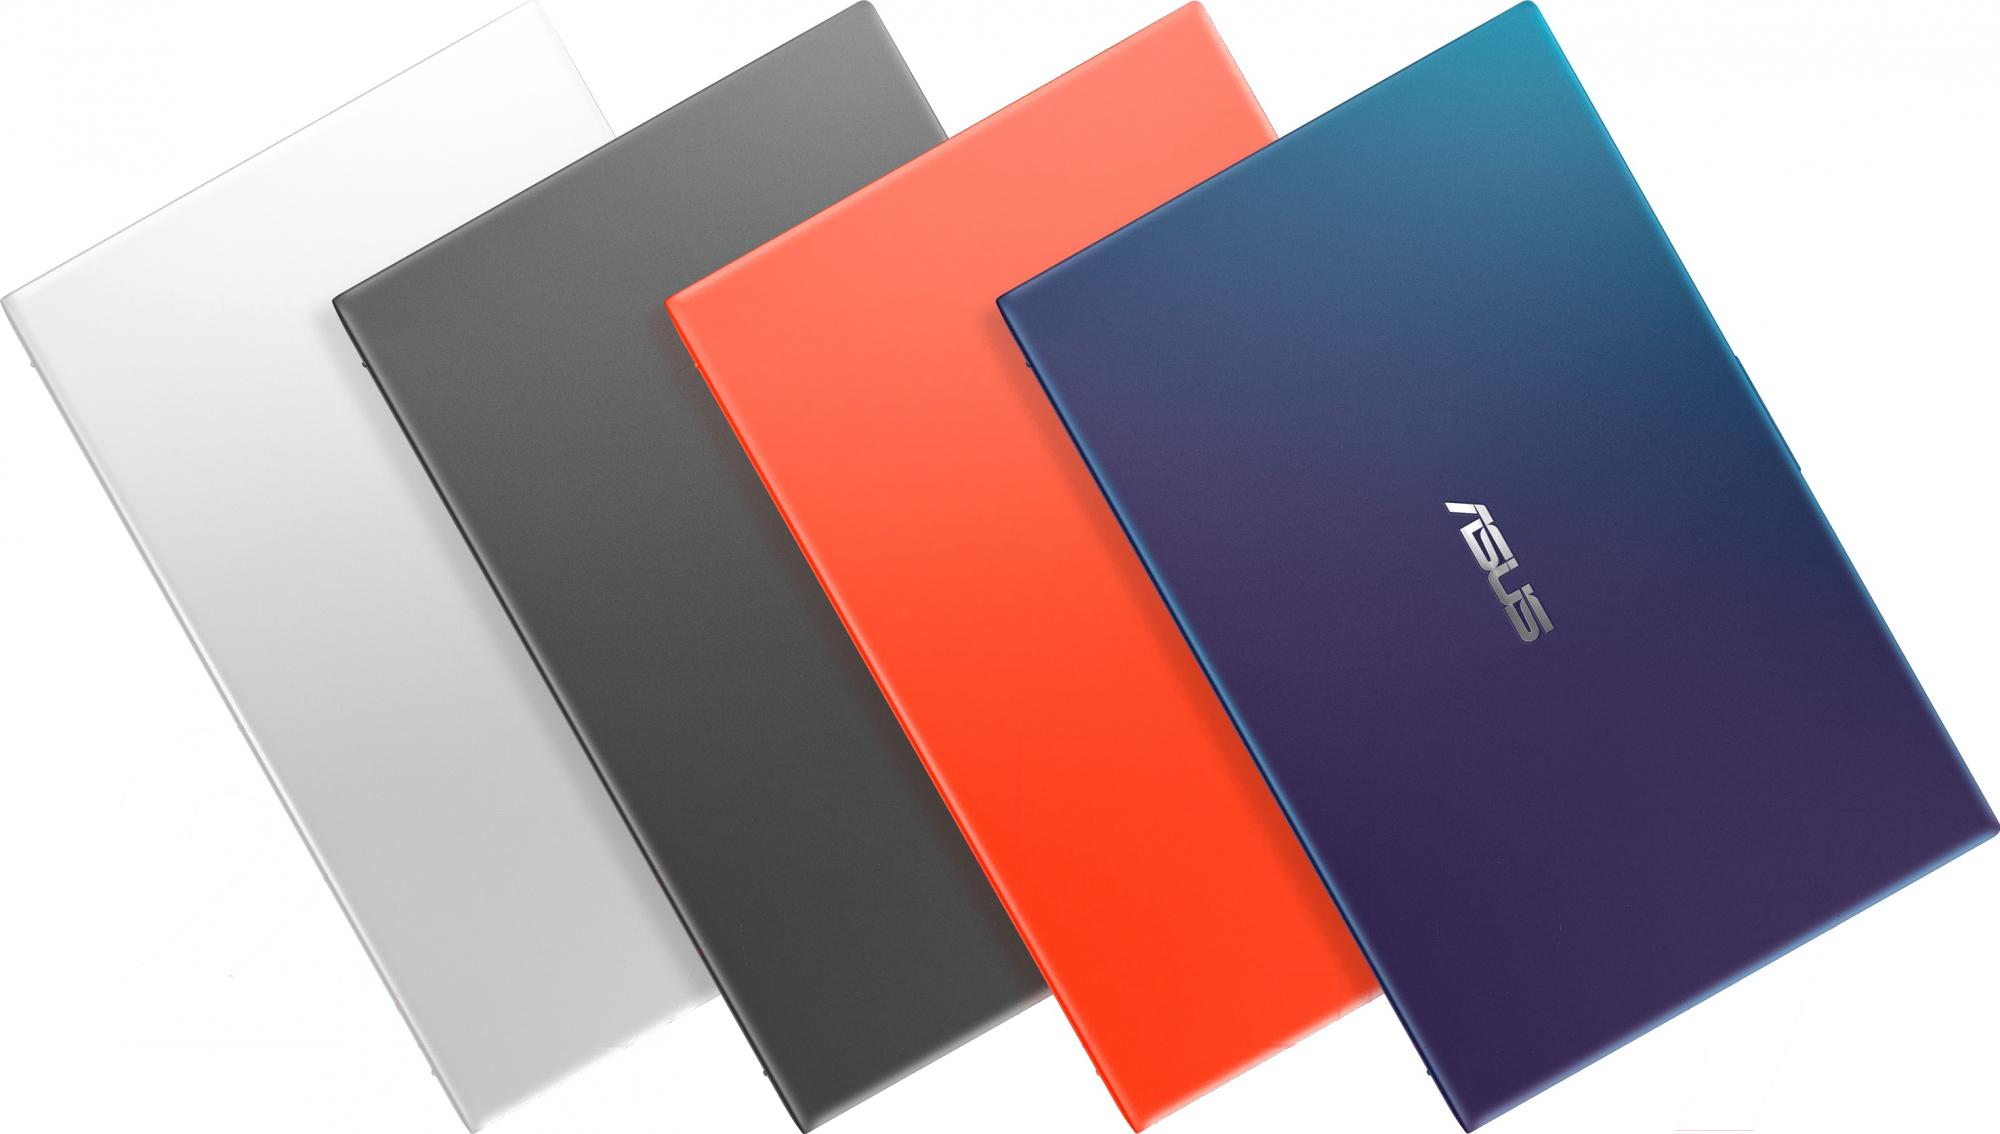 Ноутбук Asus Vivobook 15 X512da Bq1134 Купить